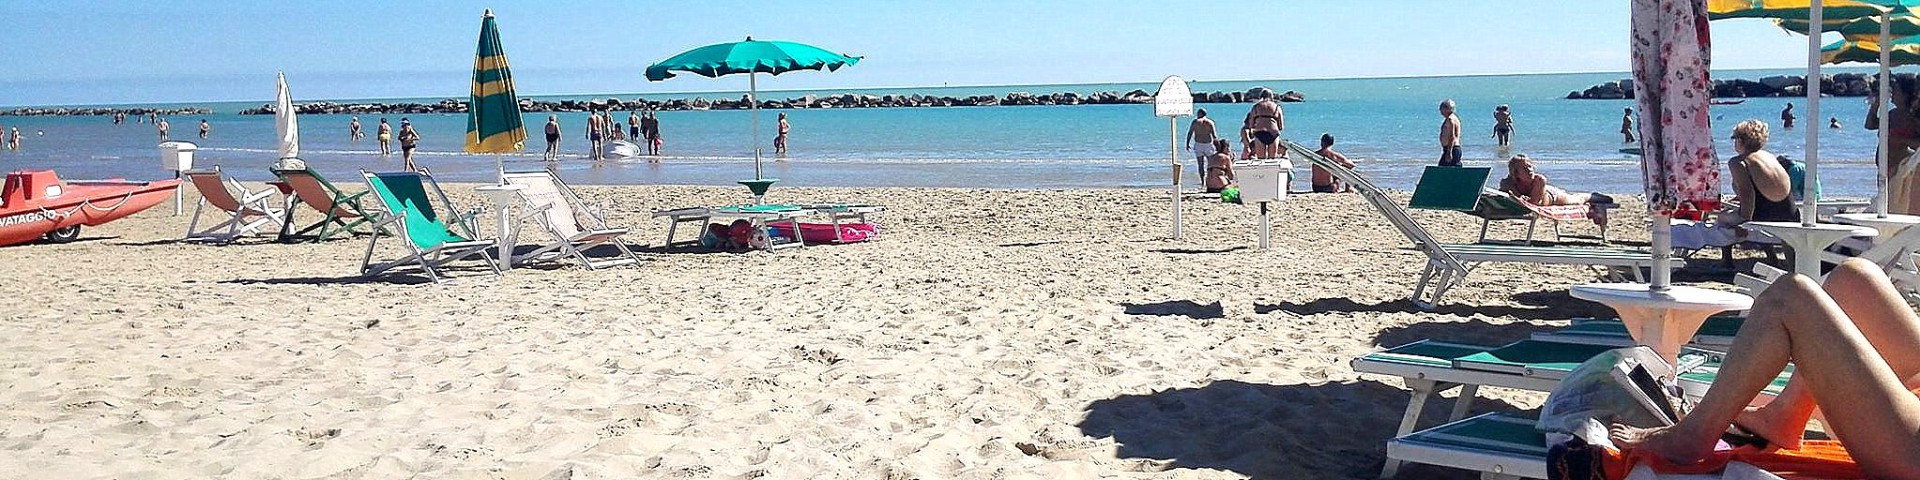 V Cupra Marittima jsou písčité pláže